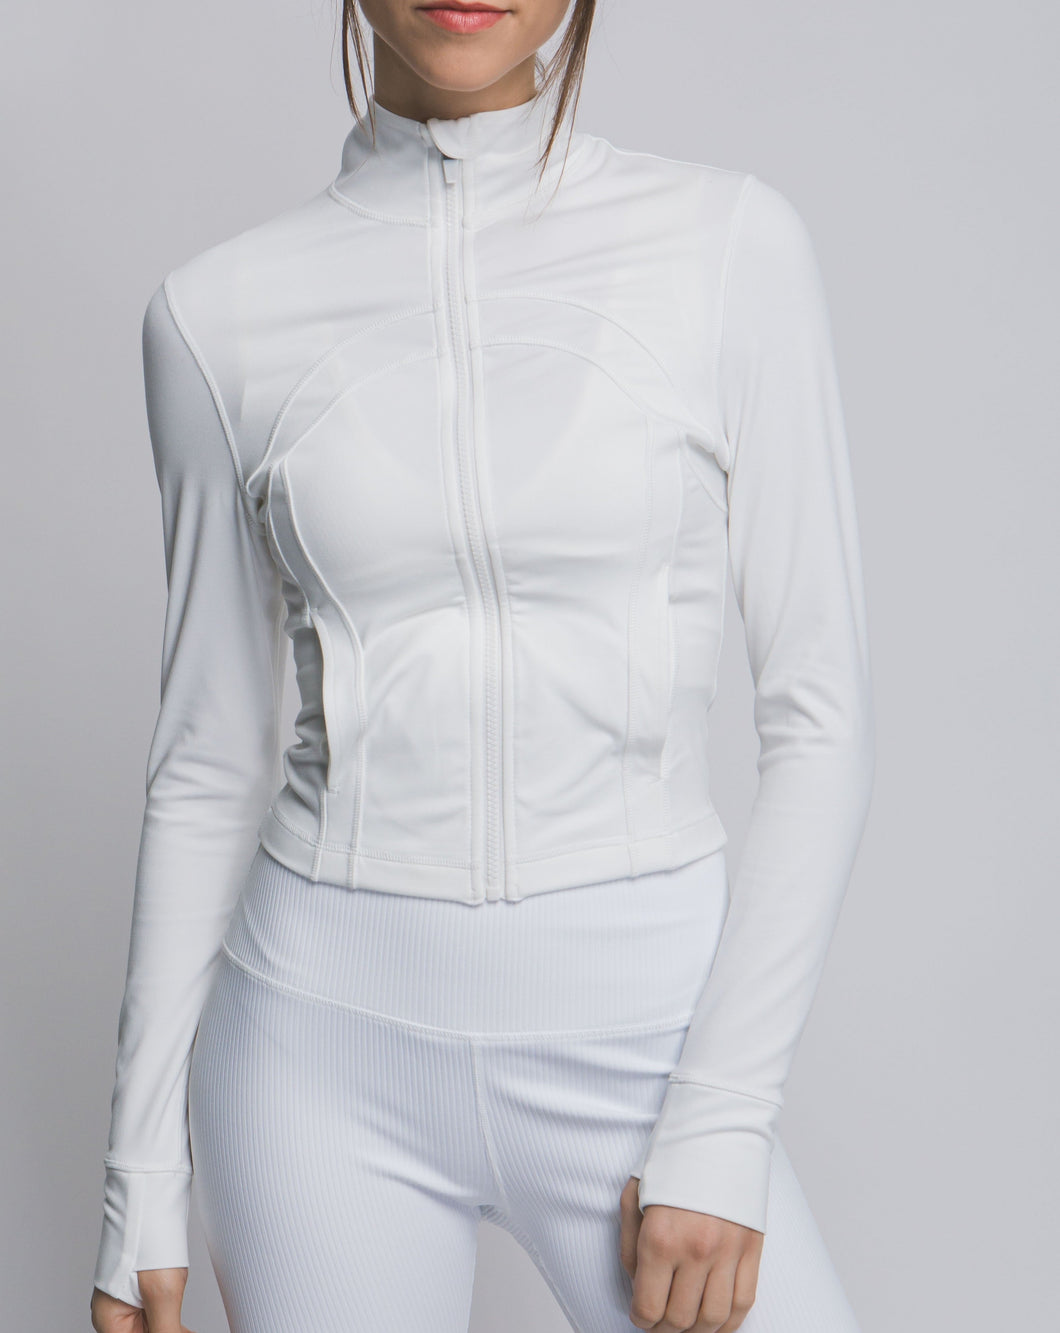 Portia Cropped Jacket (White)